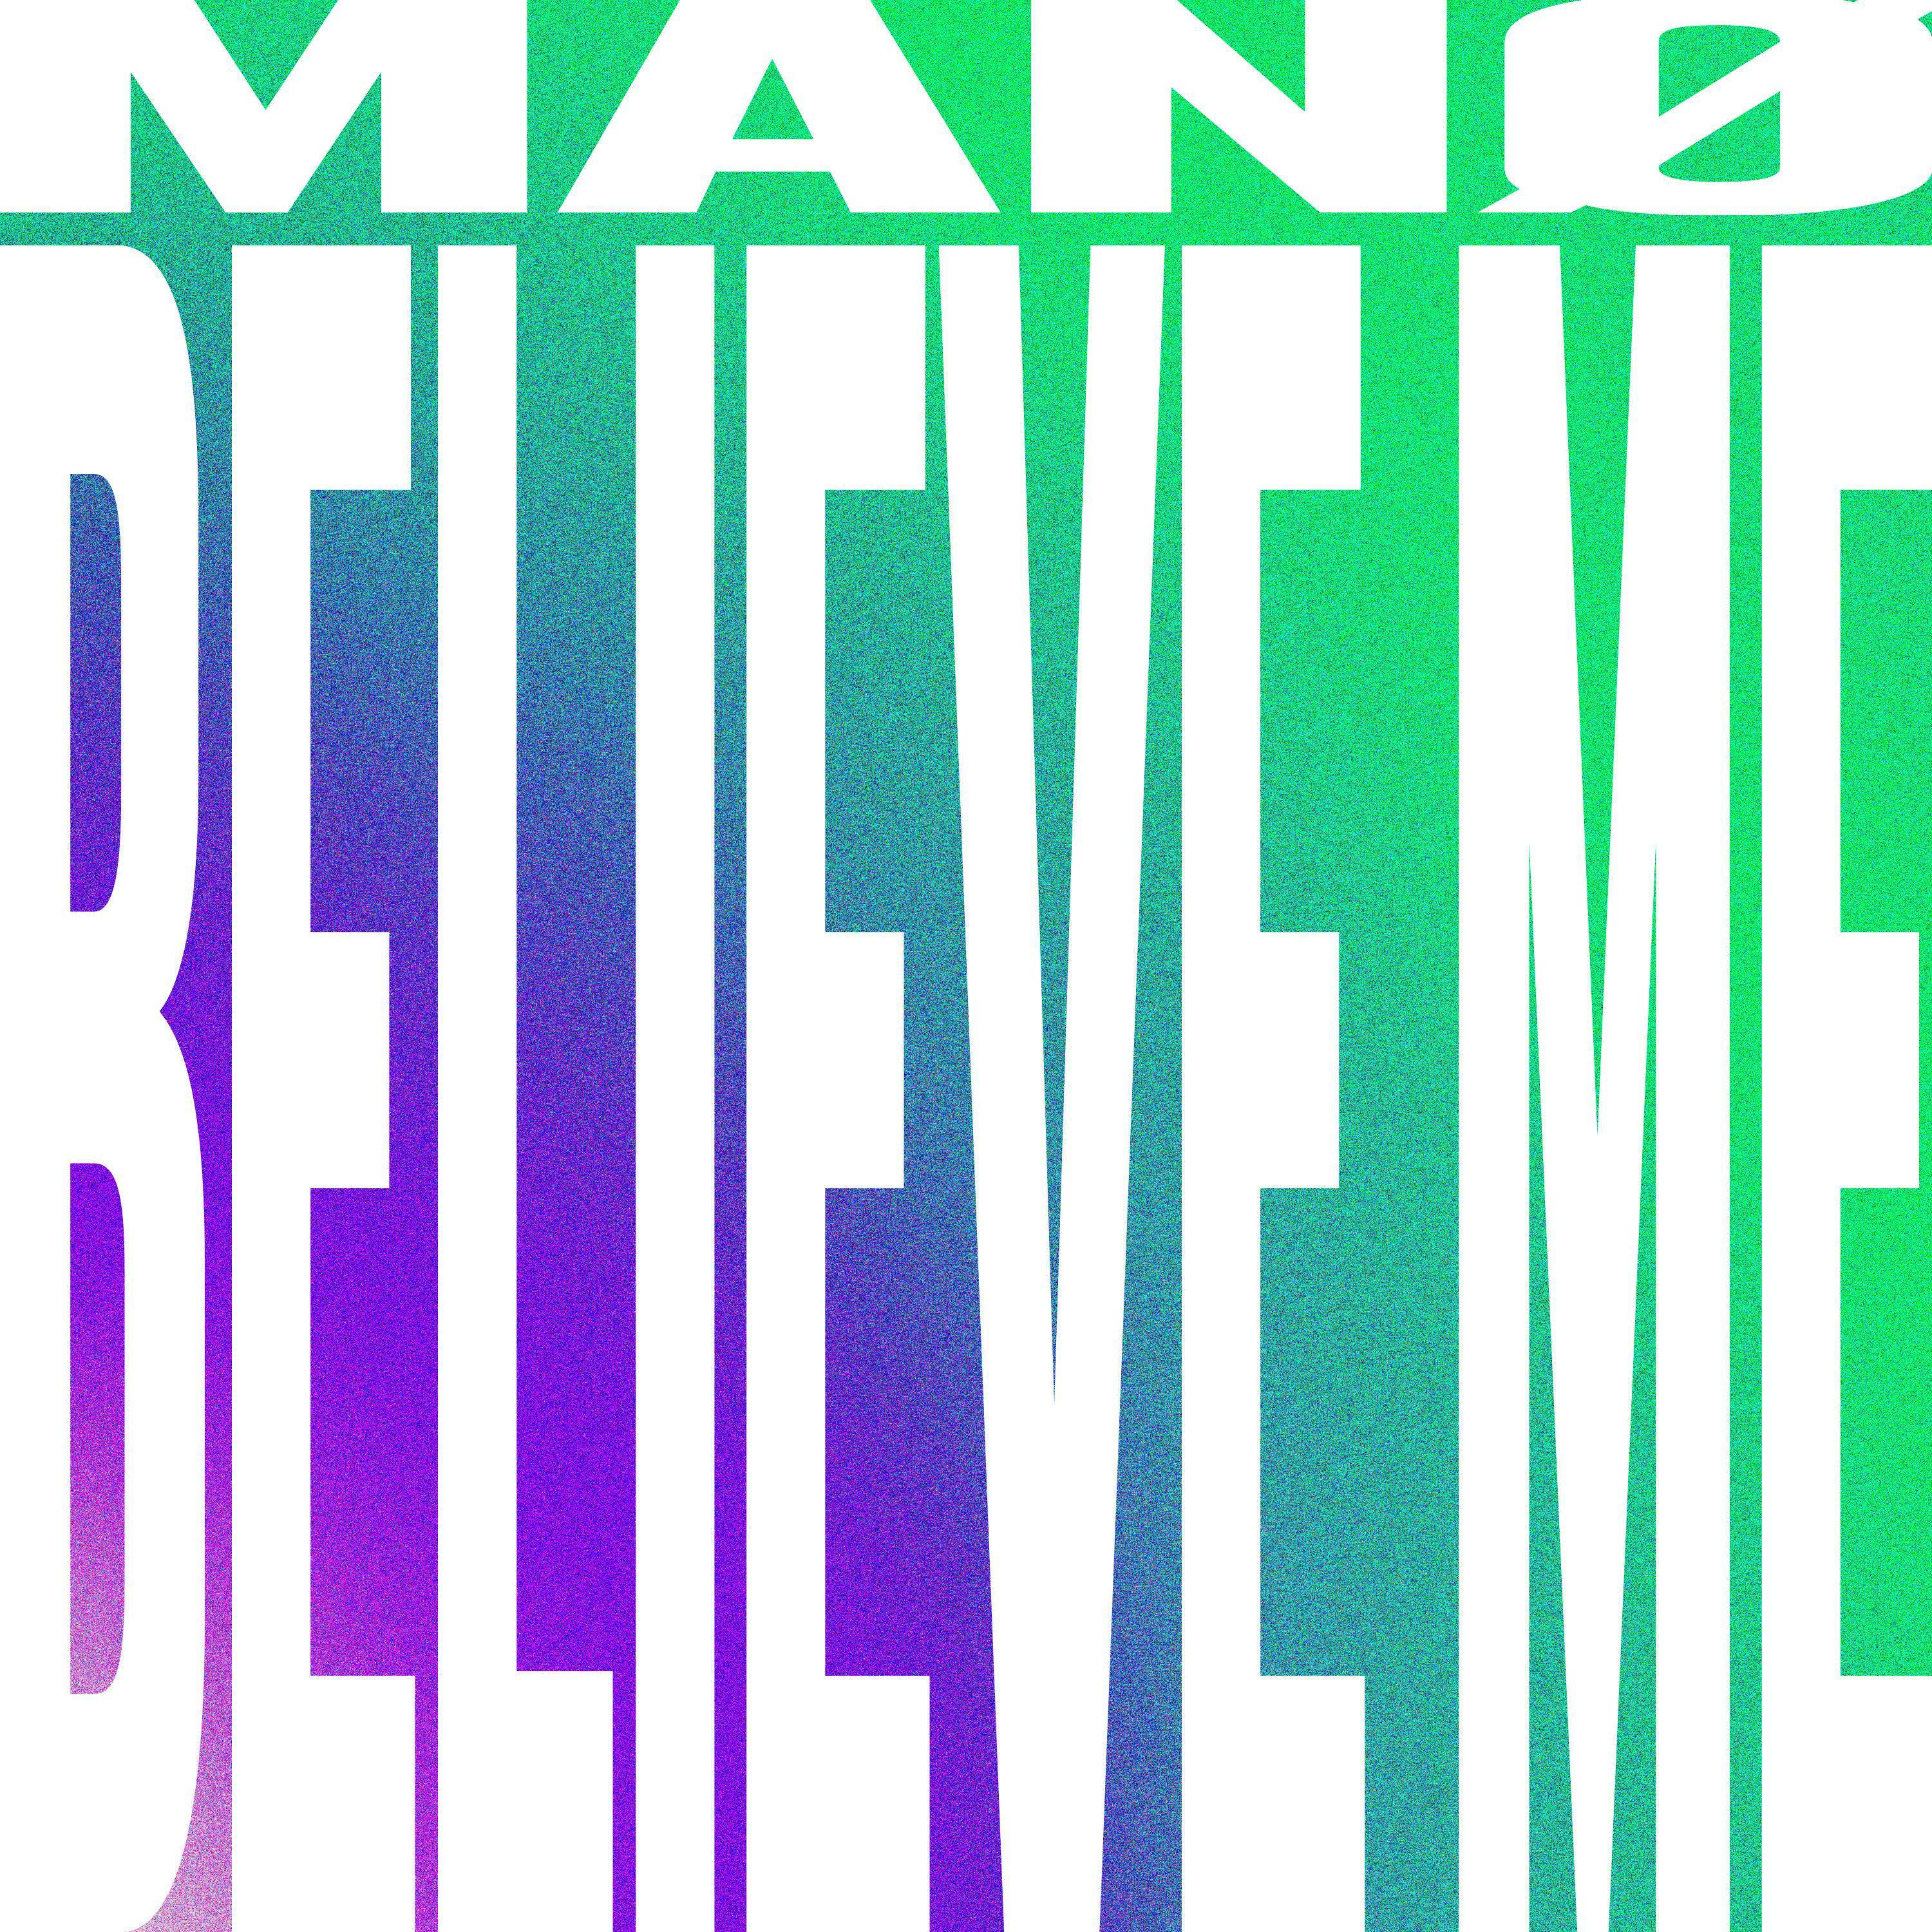 Mano - Believe Me